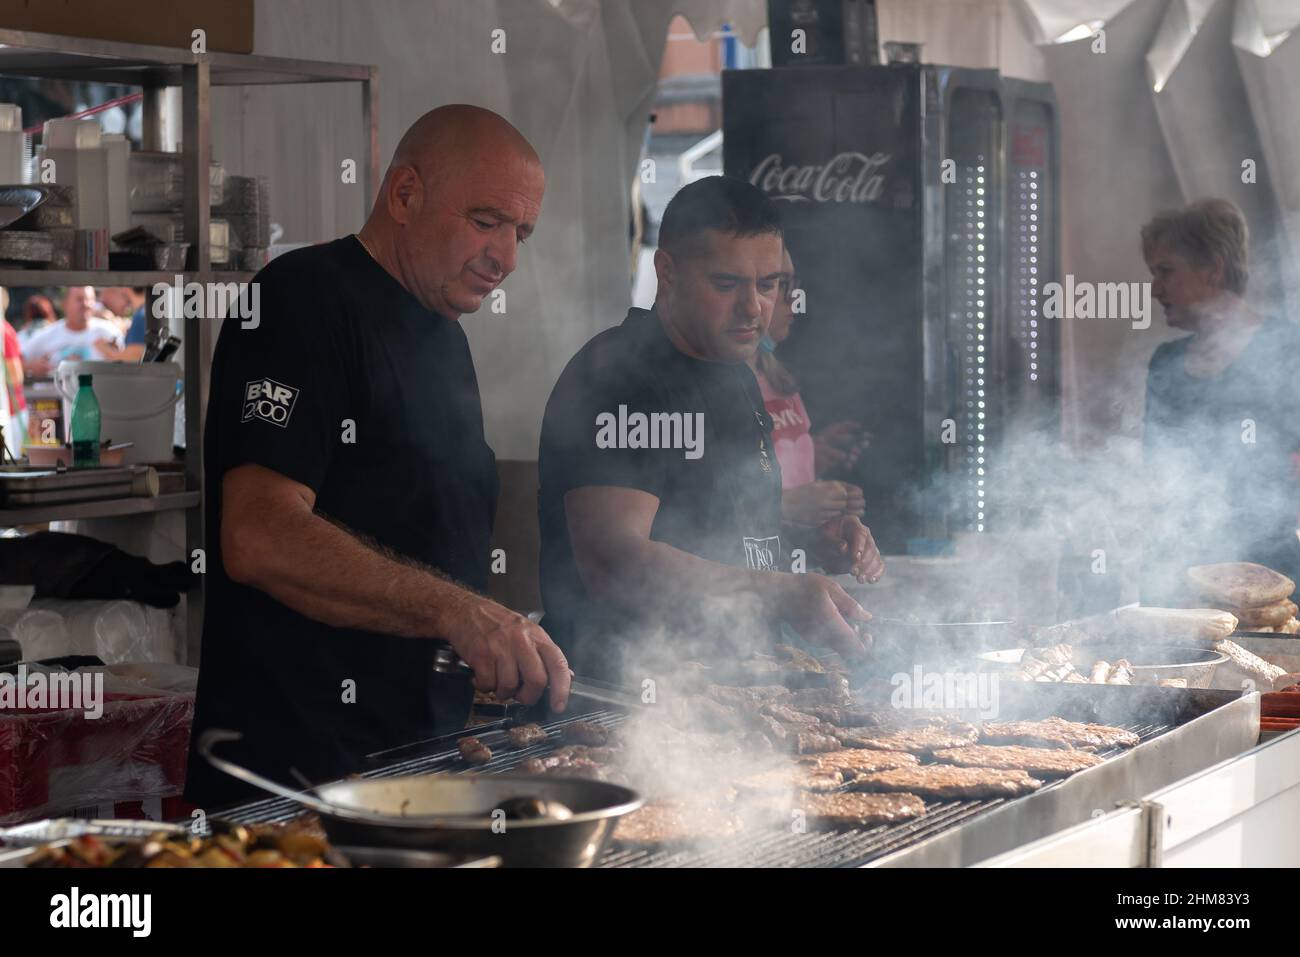 Les gens cuisent de la viande grillée pendant un festival de la ville. Concept de cuisine de rue. Ville de Gorizia, Friuli Venezia Giulia, Italie. Banque D'Images